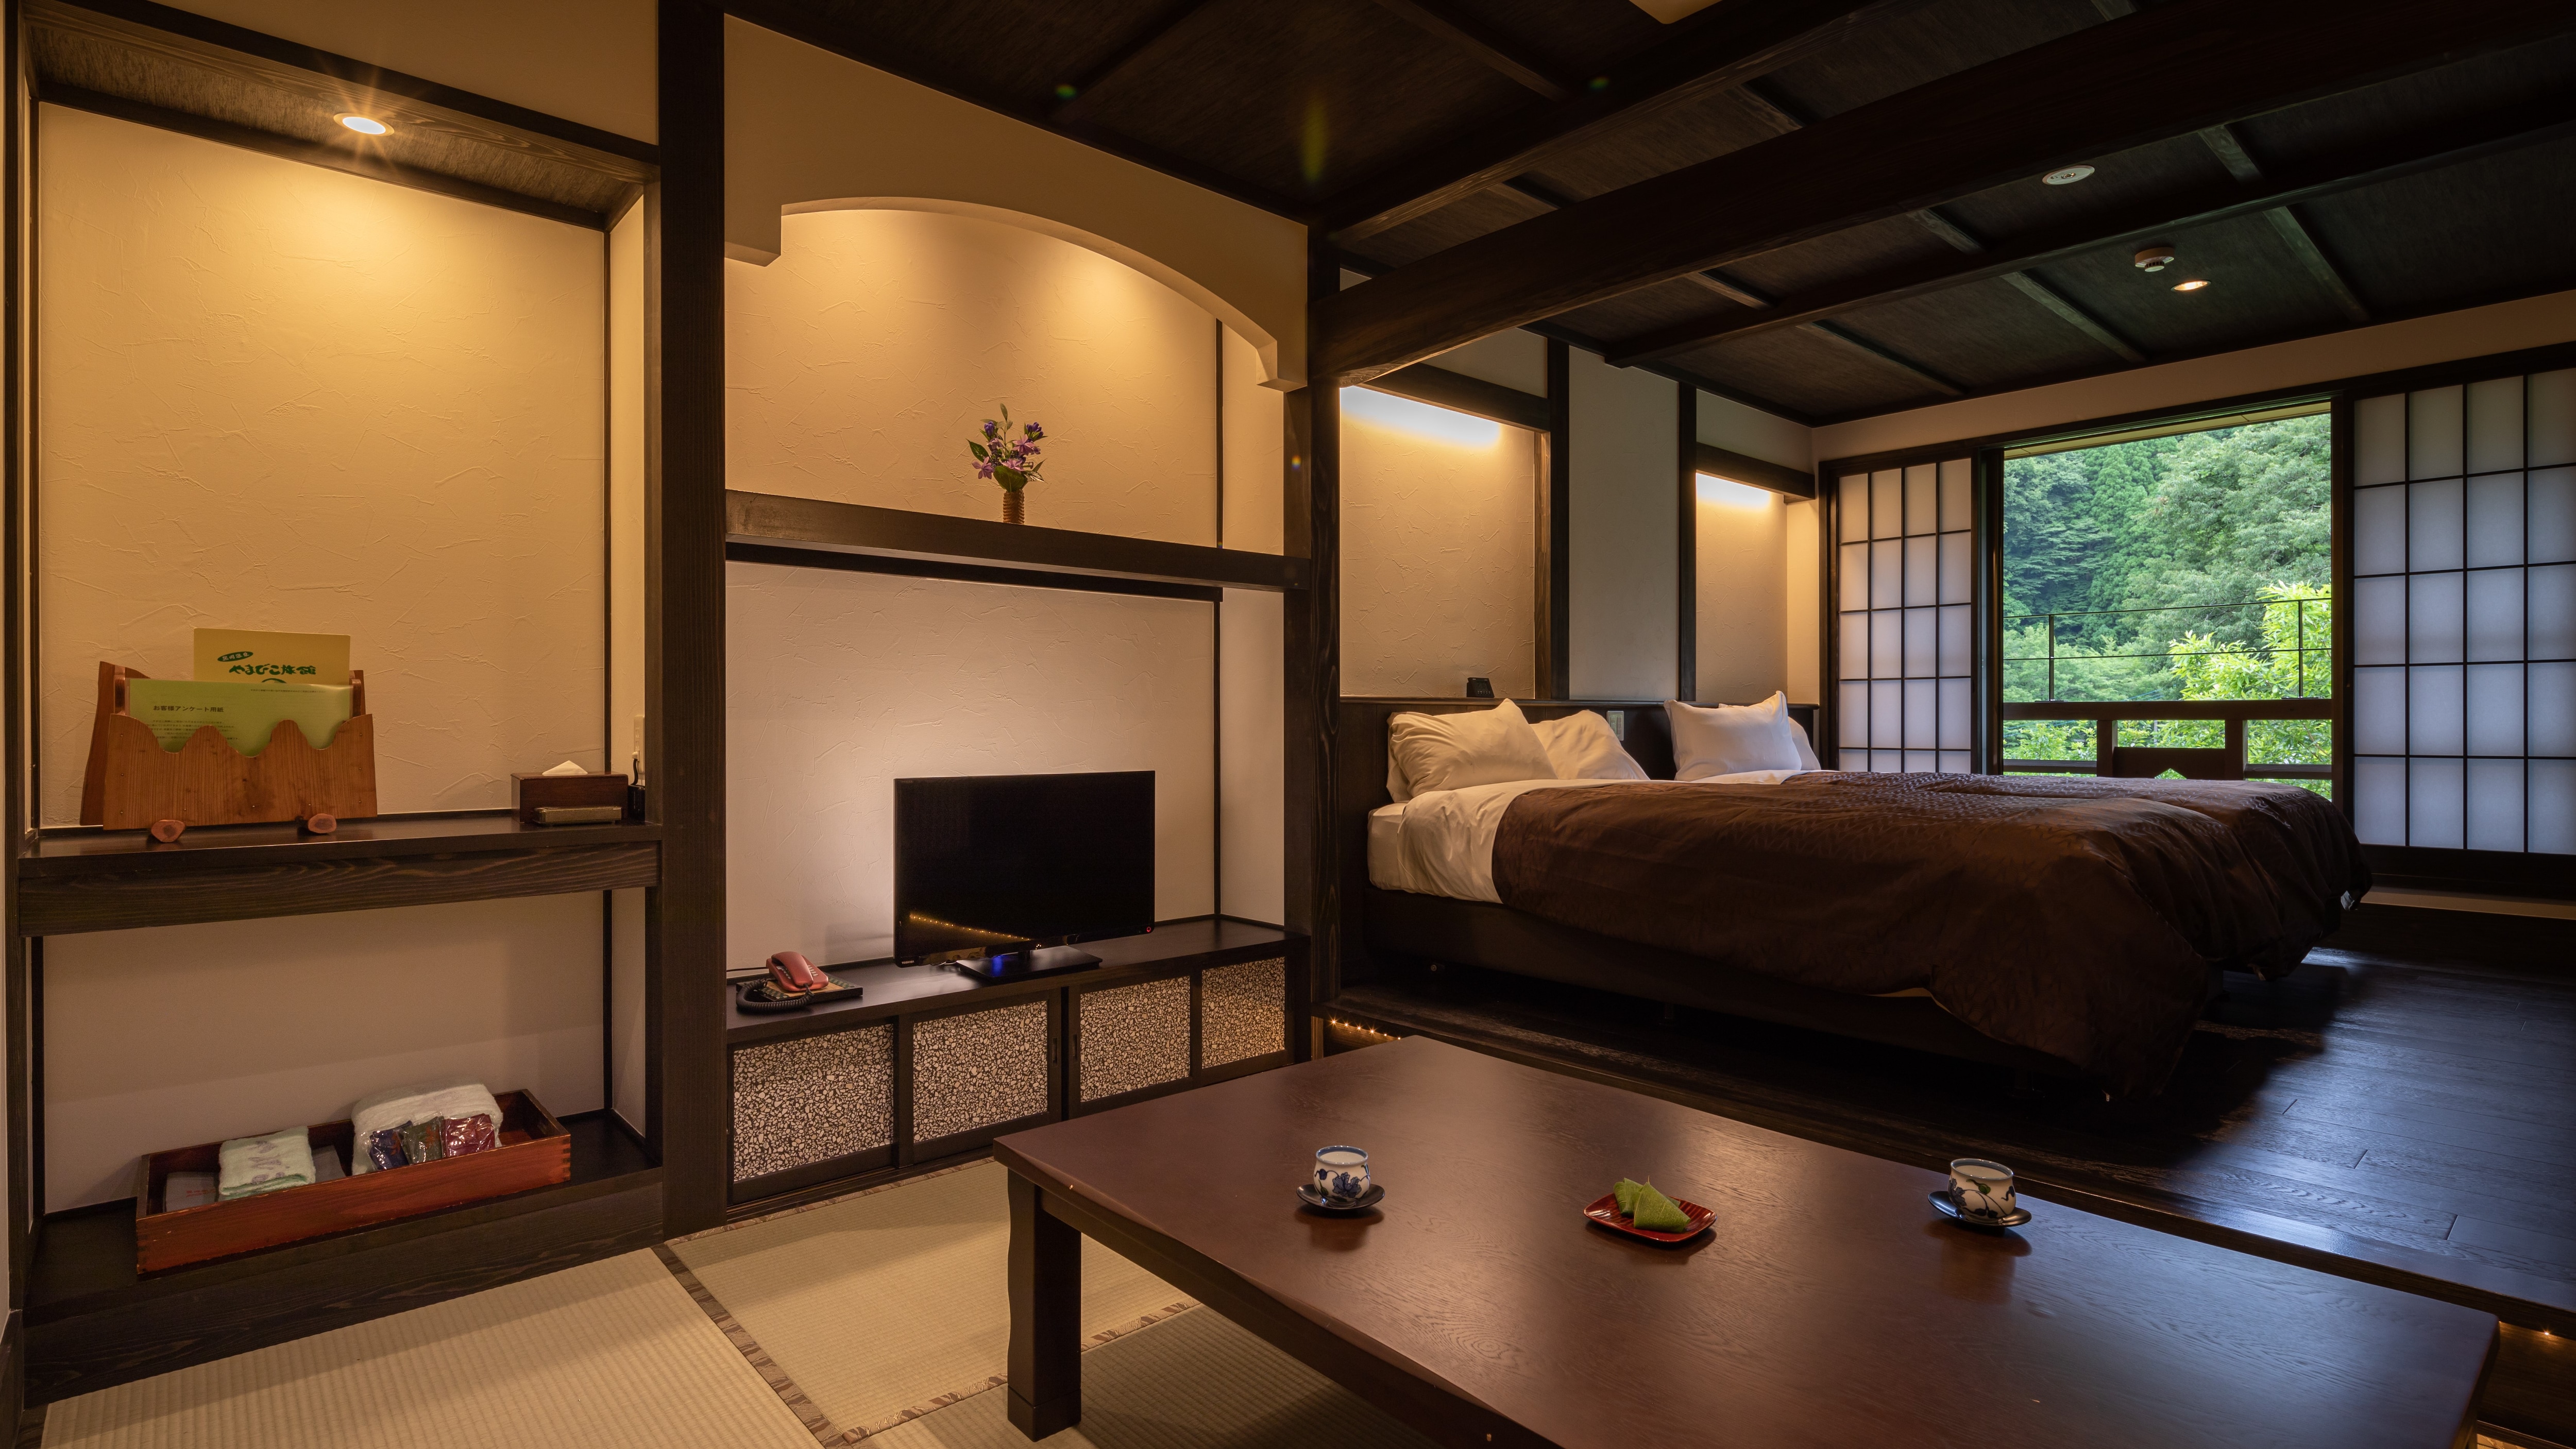 Contoh kamar Jepang dan Barat II. Tipe ini memiliki 3 kamar.